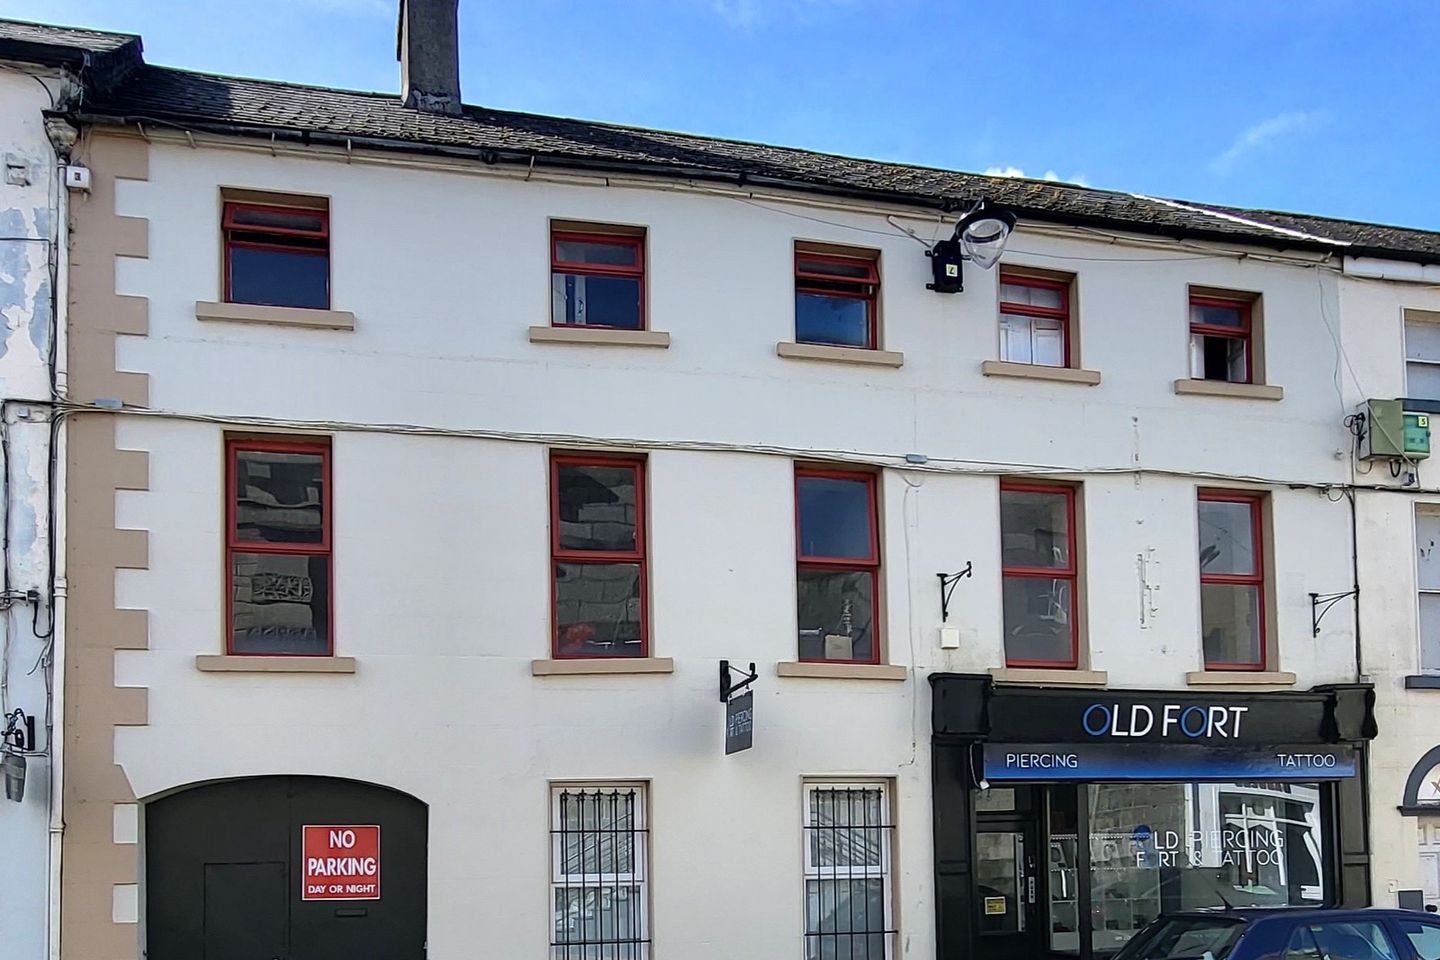 24 Church Street, Portlaoise, Co. Laois